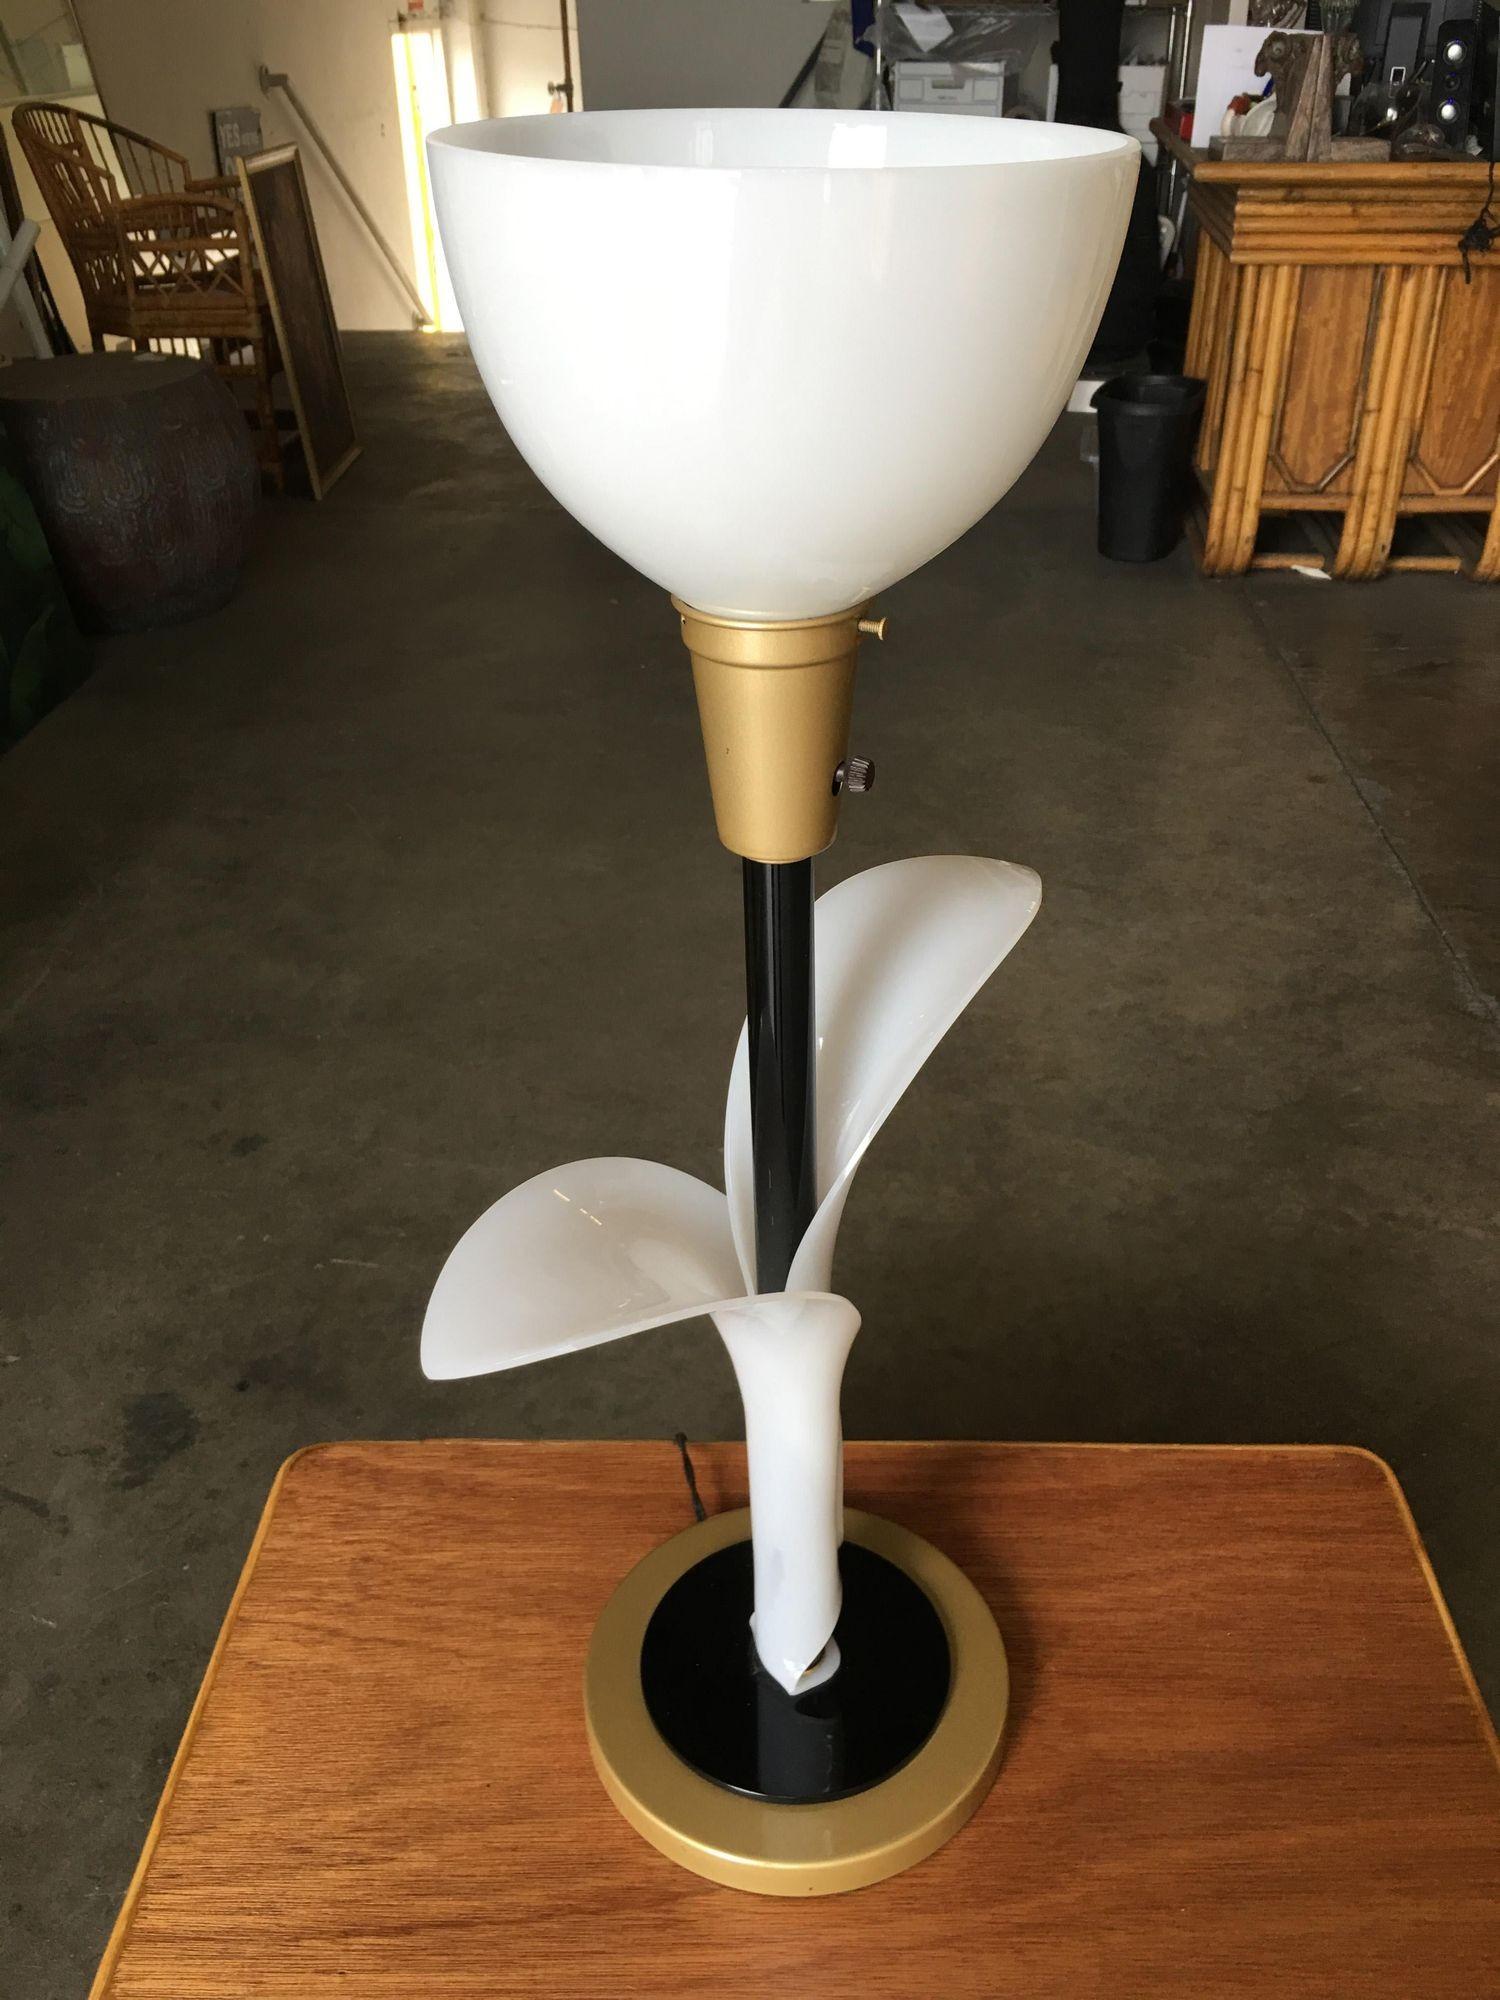 Cette exceptionnelle paire de lampes de table tulipe des années 1960, fabriquée par REMBRANDT Lamp, présente des tiges en forme de feuilles délicatement façonnées dans un acrylique de couleur ivoire. L'acrylique entoure gracieusement la base en